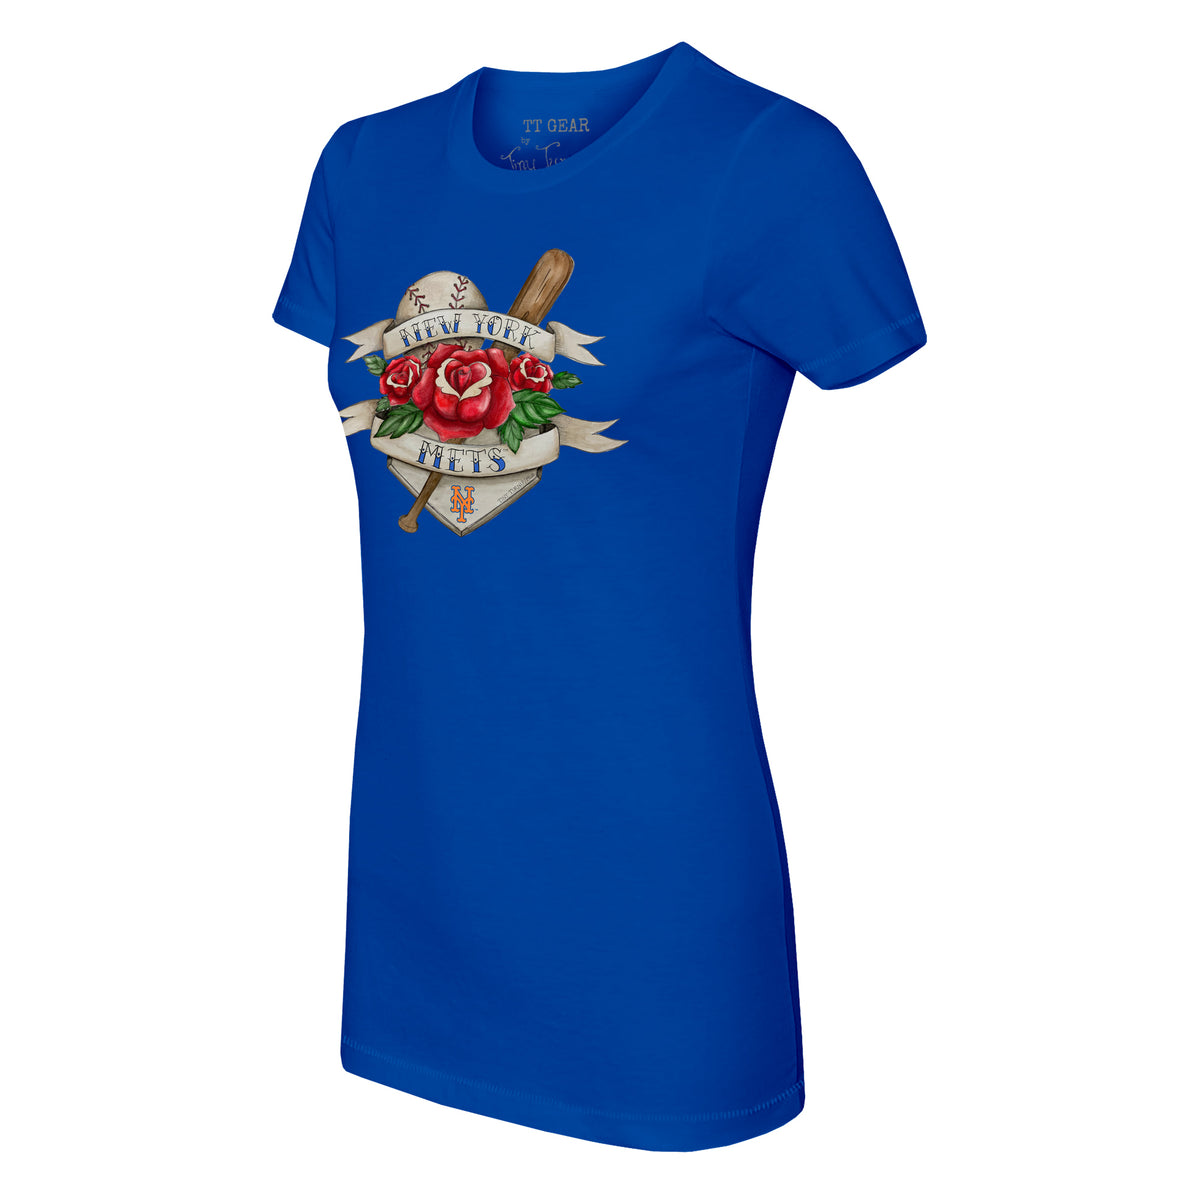 New York Mets Tattoo Rose Tee Shirt